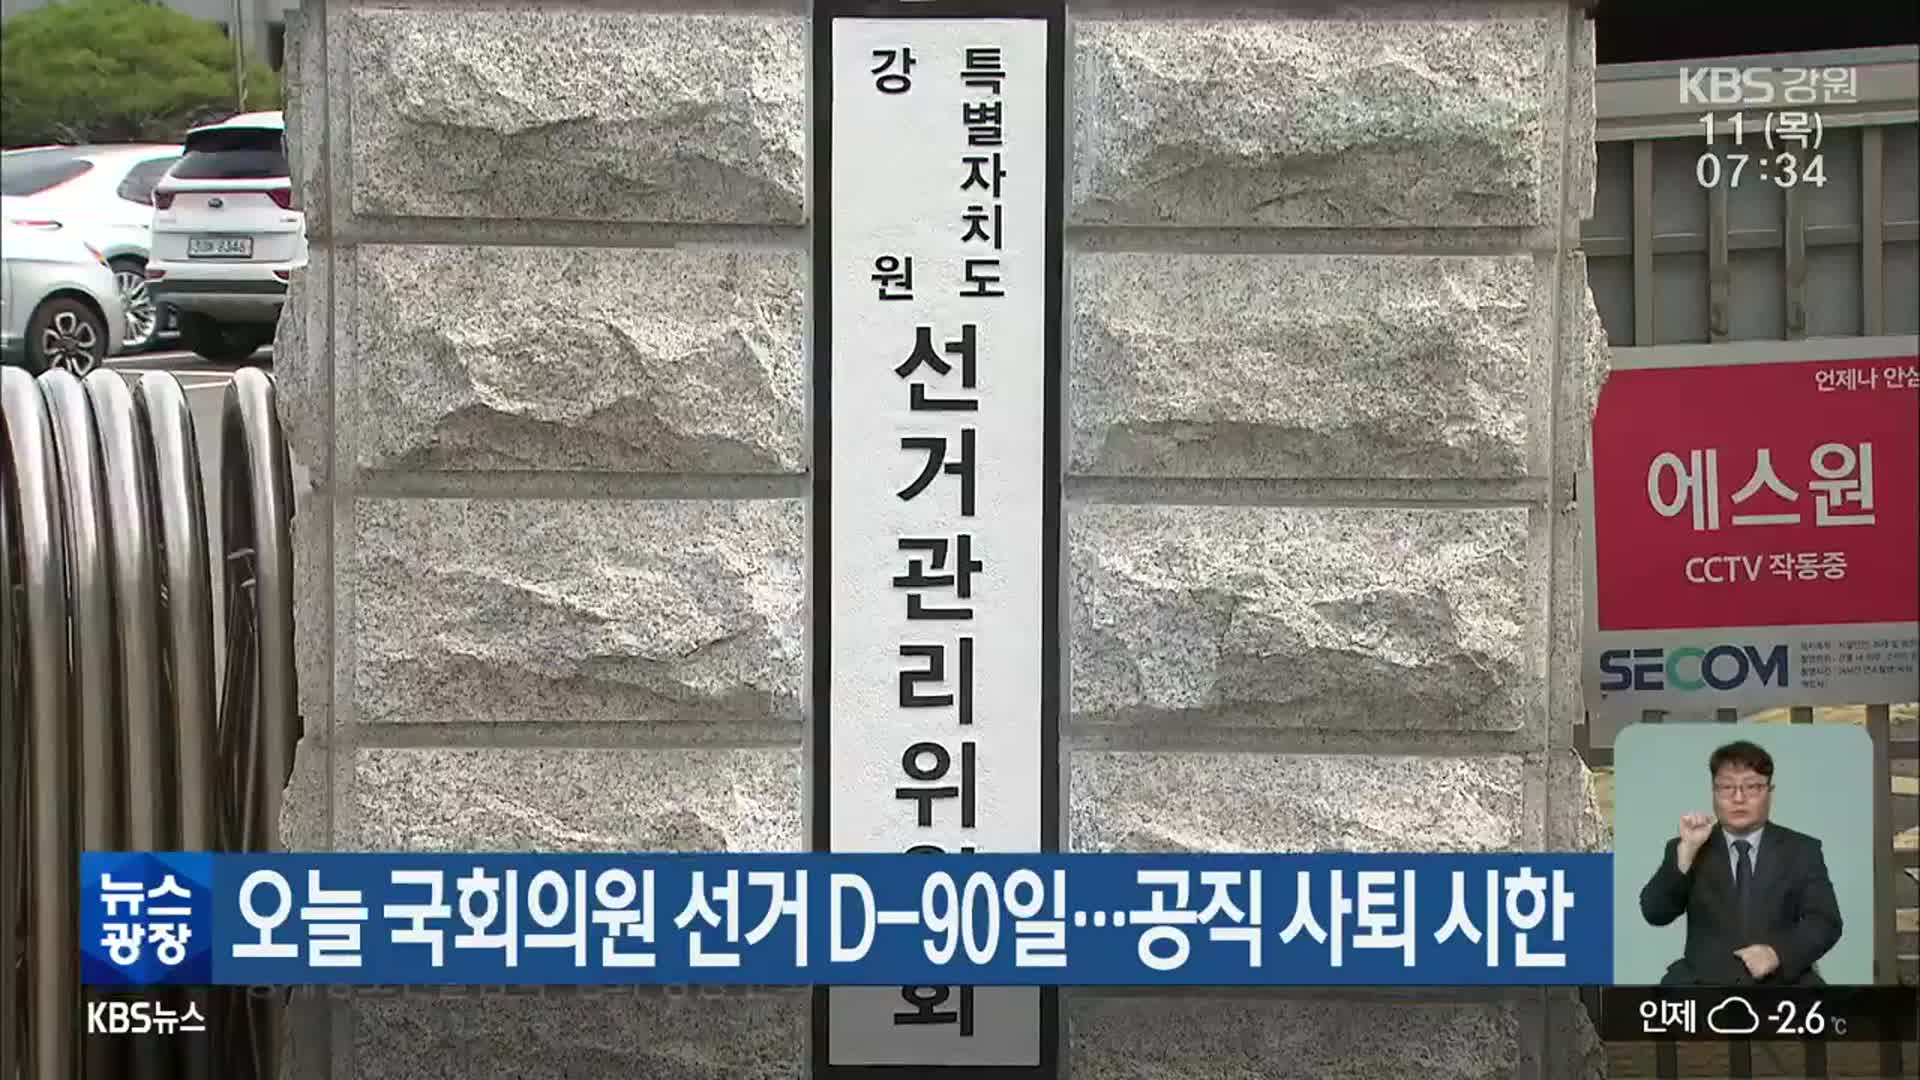 오늘 국회의원 선거 D-90일…공직 사퇴 시한